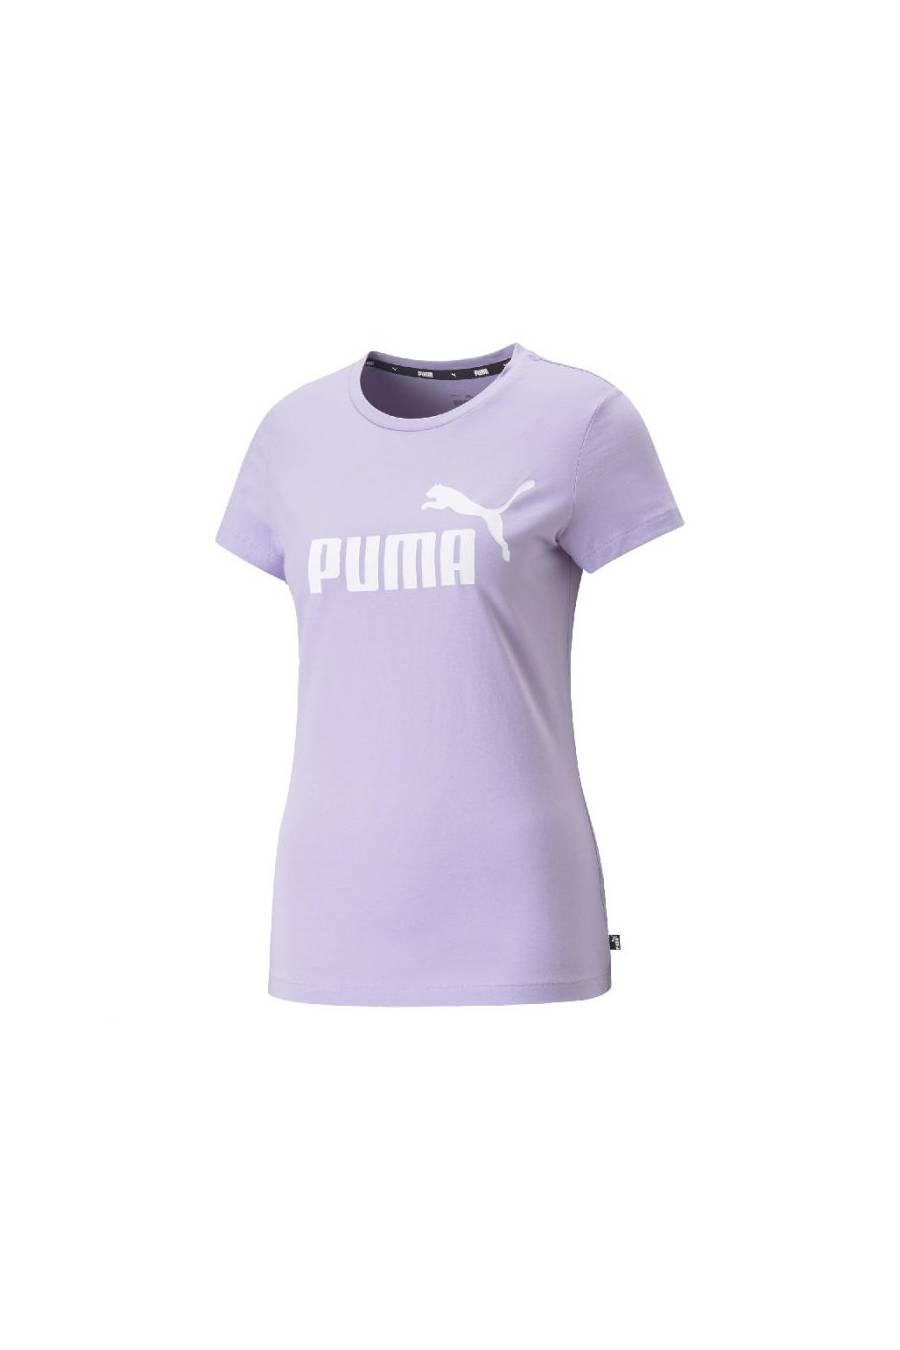 Camiseta Puma Essentials Logo 586775-70